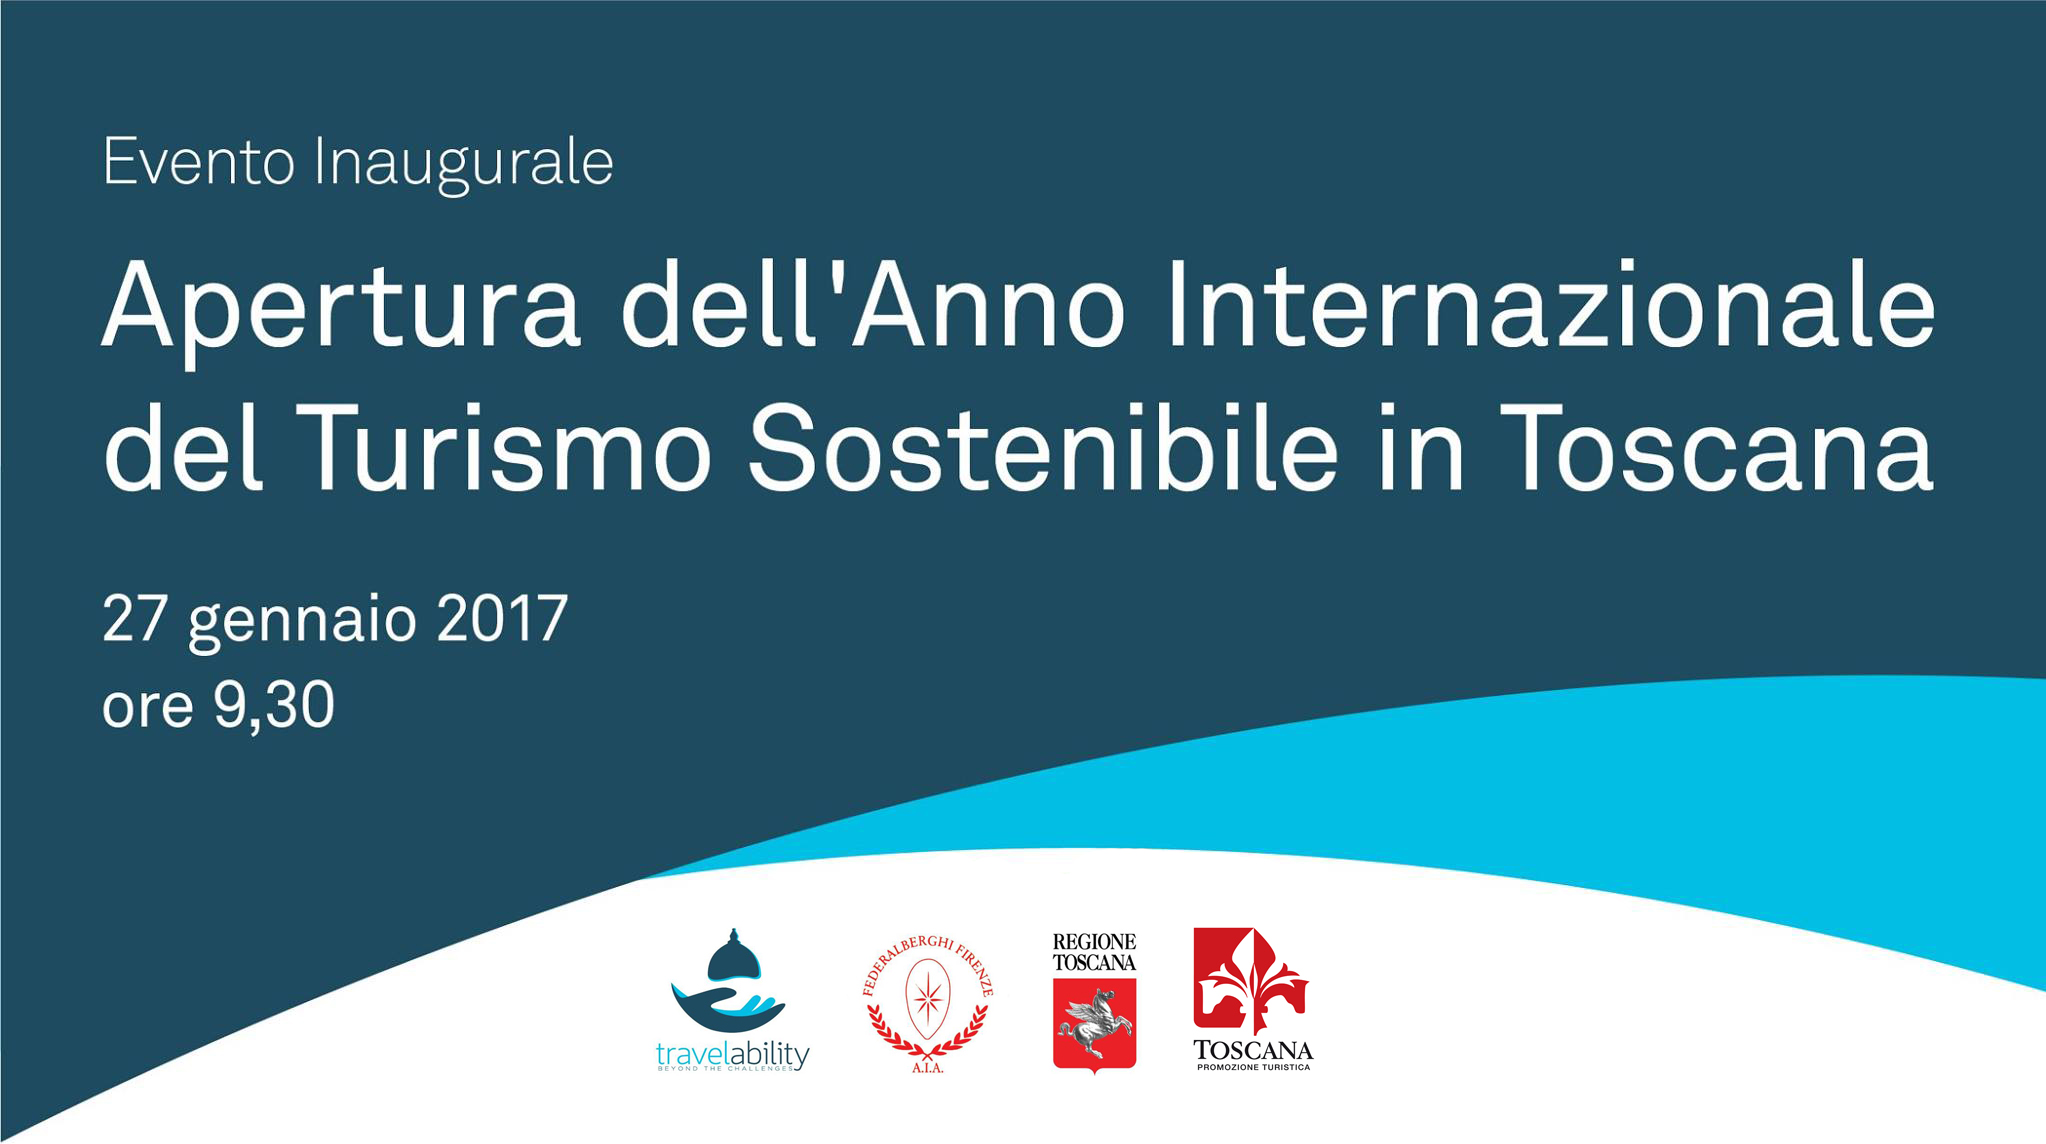 La Toscana inaugura l’Anno internazionale del Turismo Sostenibile